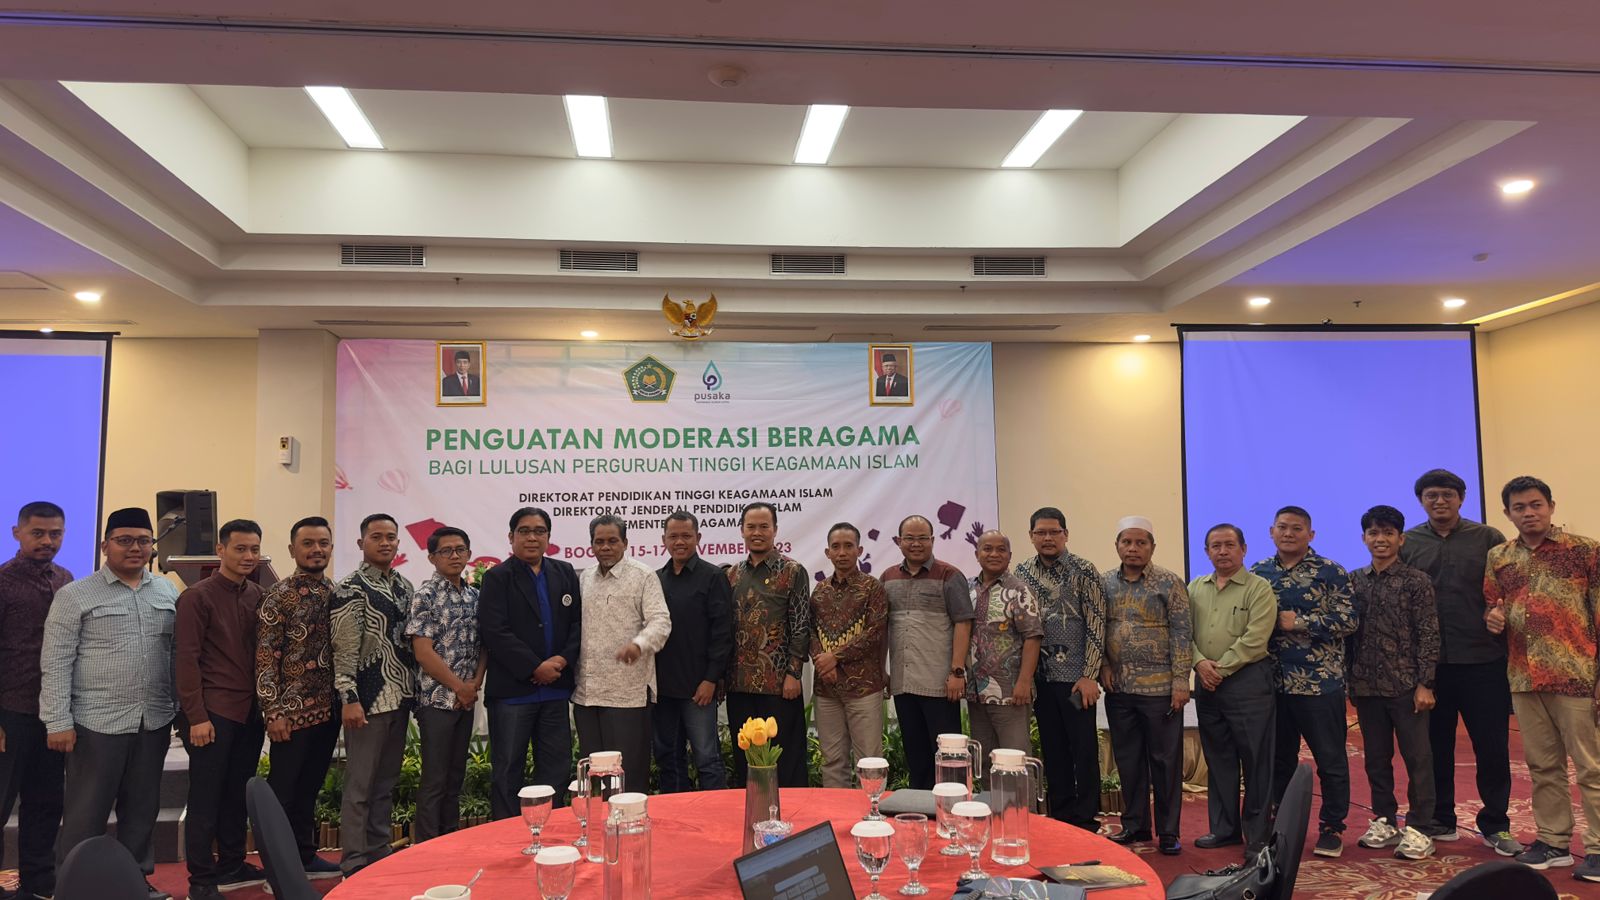 Pusat P2KMA Hadiri Pertemuan Penguatan Moderasi Beragama bagi Lulusan PTKI di Bogor